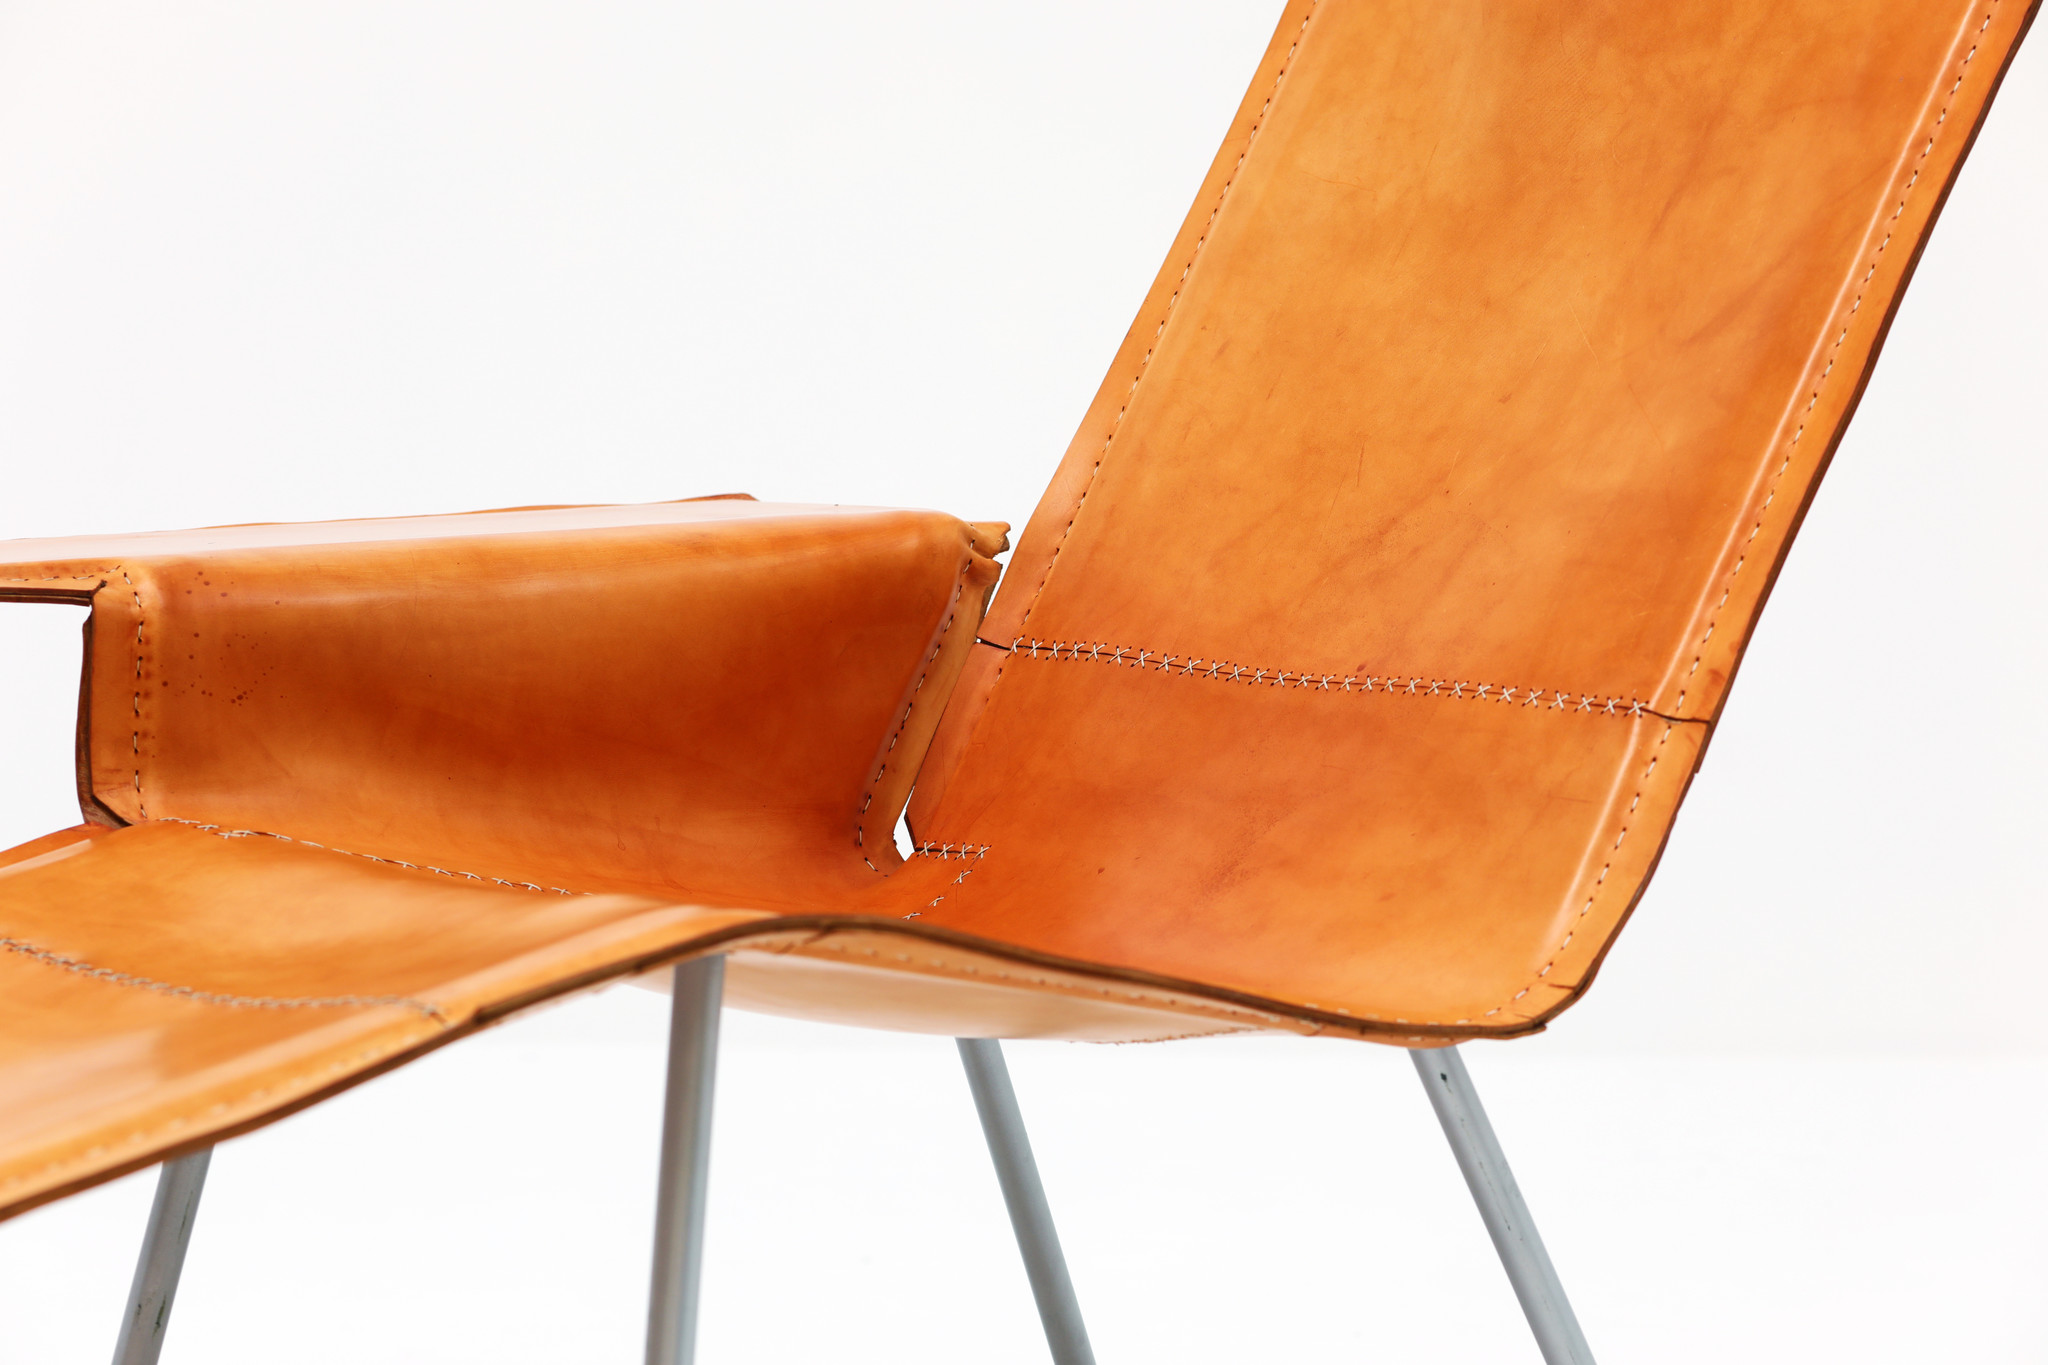 Prototype Maarten Van Severen Lounge chair by Pastoe, 2004